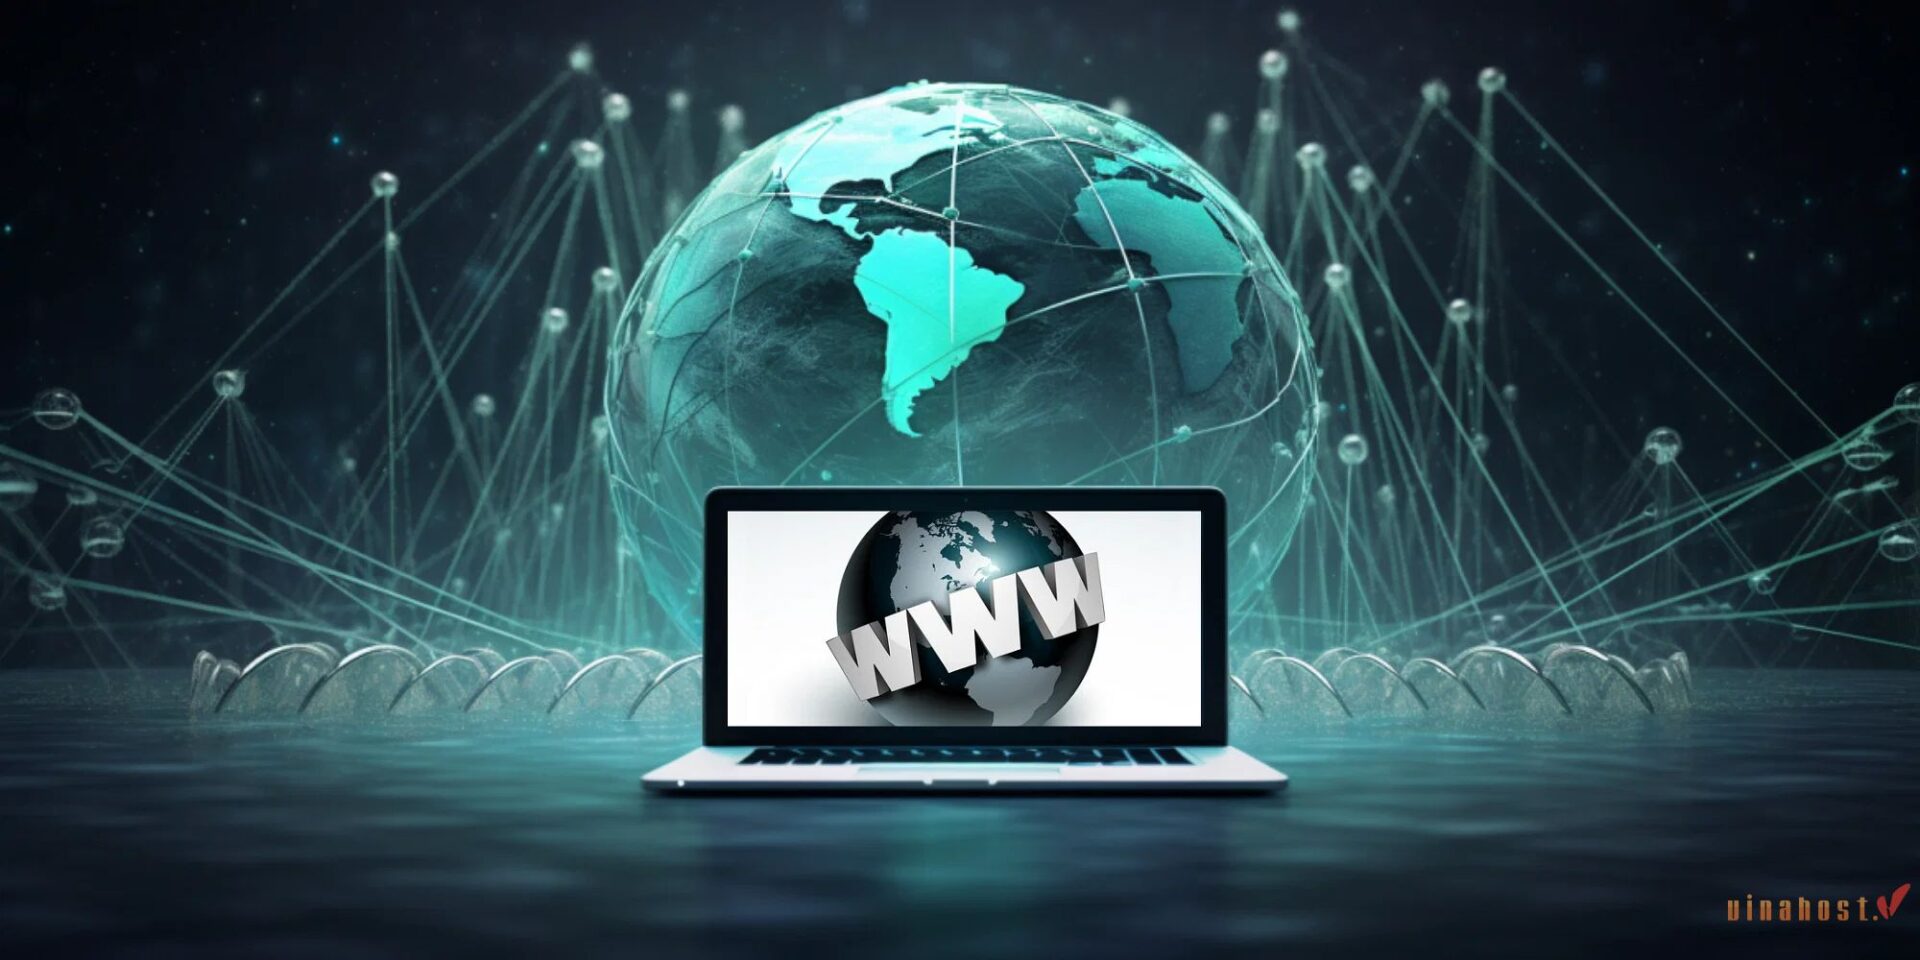 World Wide Web là gì